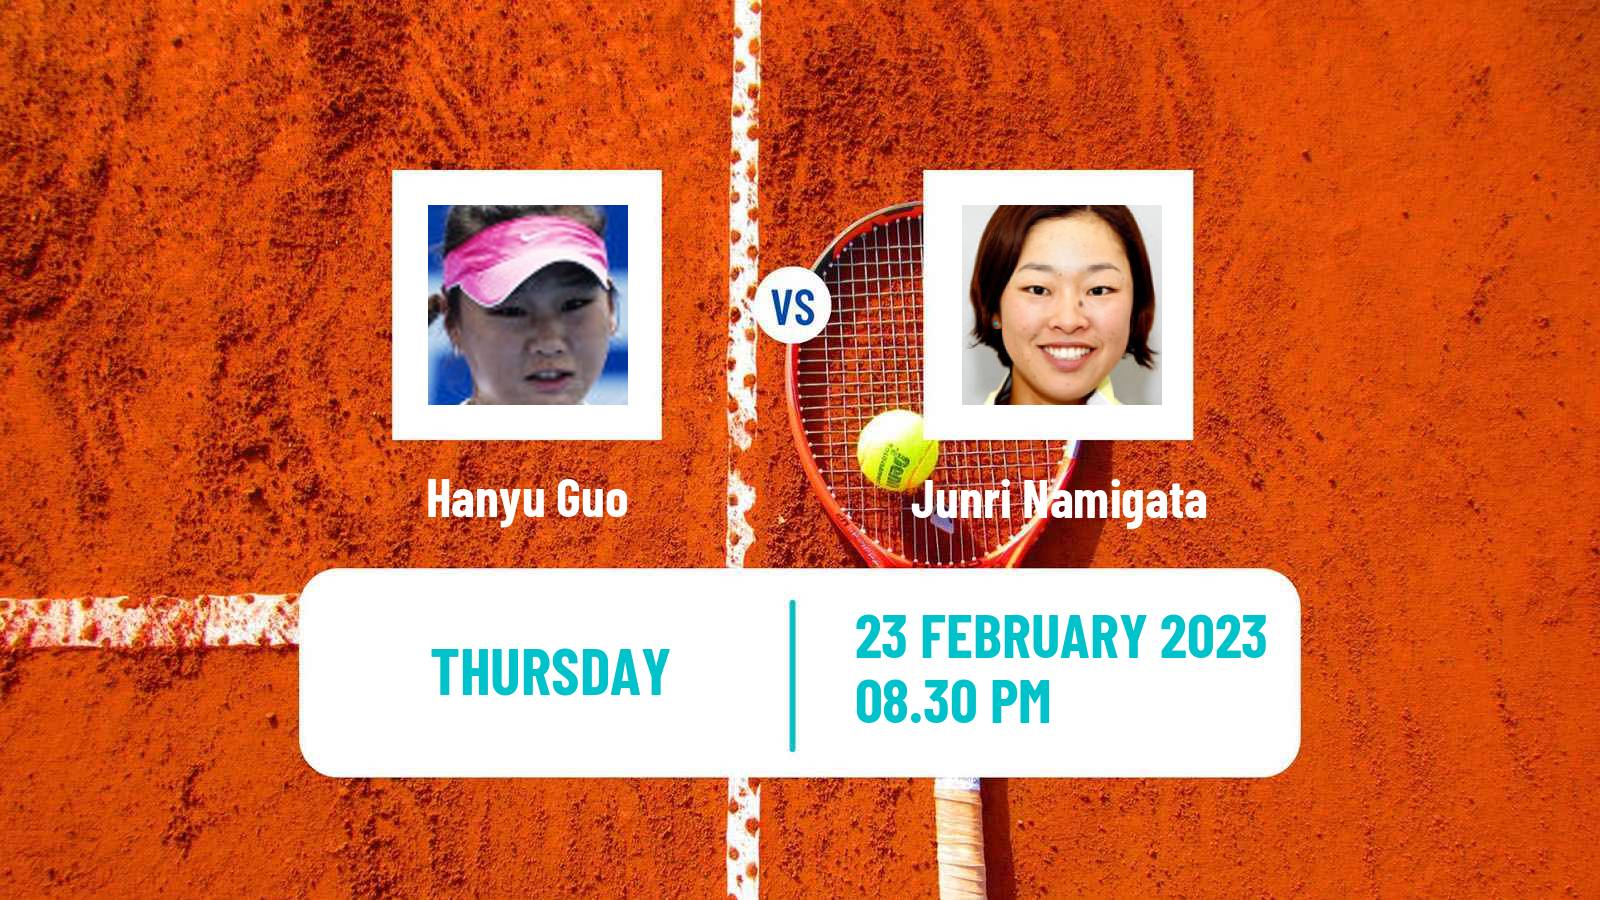 Tennis ITF Tournaments Hanyu Guo - Junri Namigata